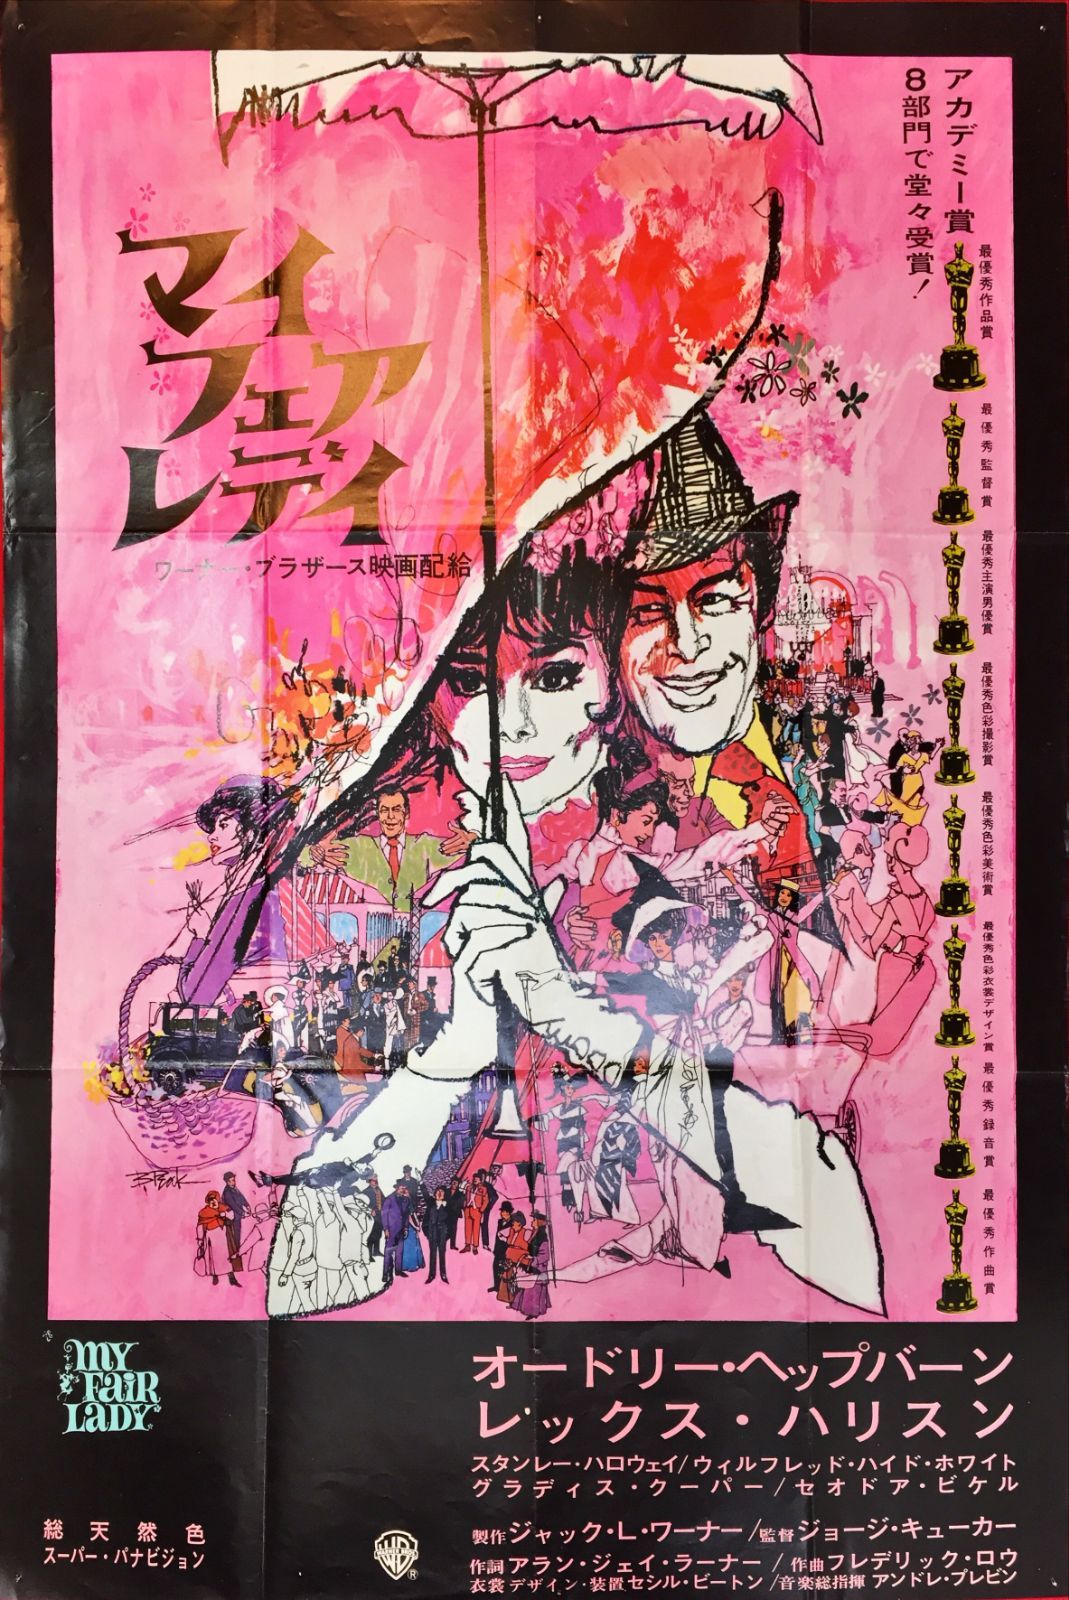 マイ・フェア・レディ』映画B2判オリジナルポスター - メルカリ